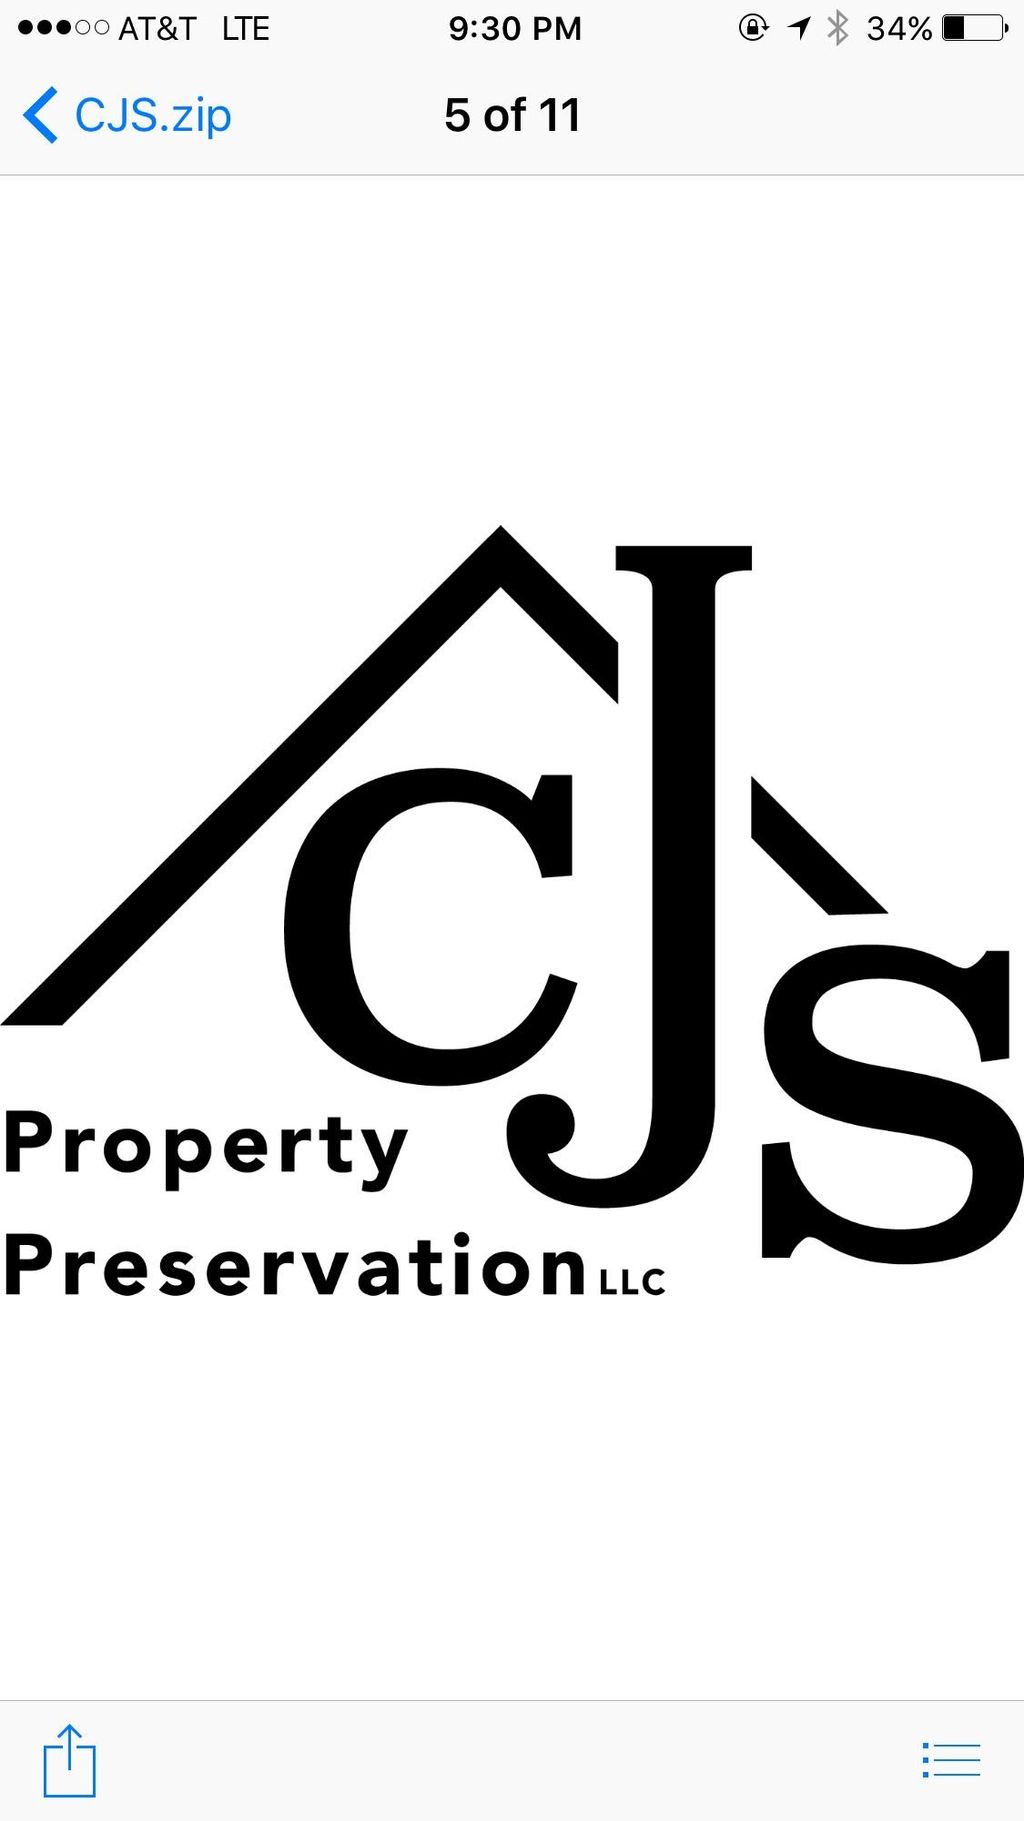 CJS Property Preservation llc